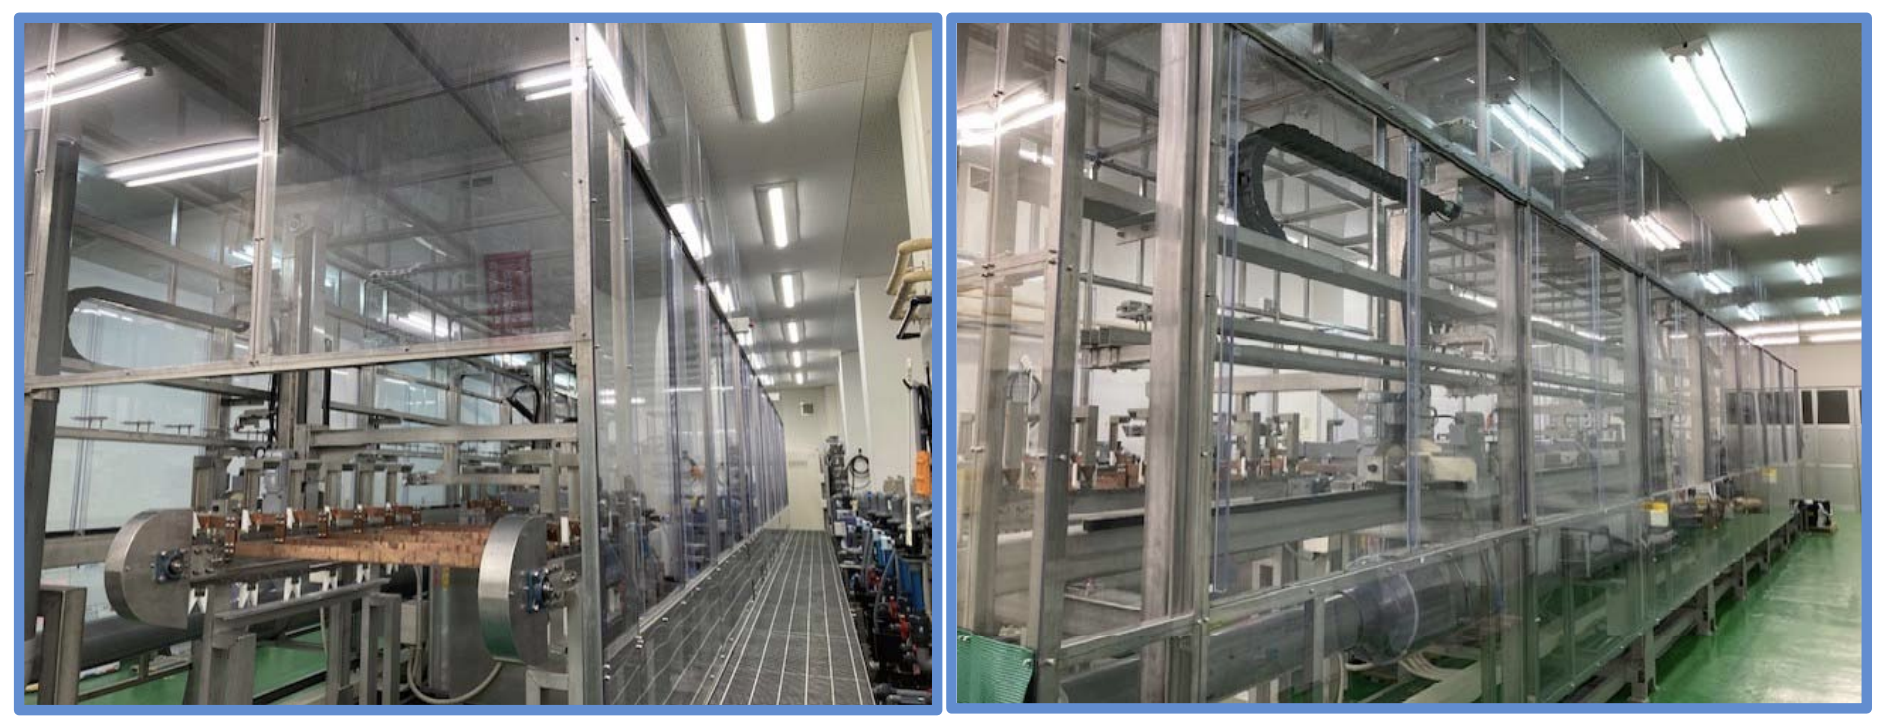 太洋工業、高密度配線基板・高周波基板の生産設備を新規導入